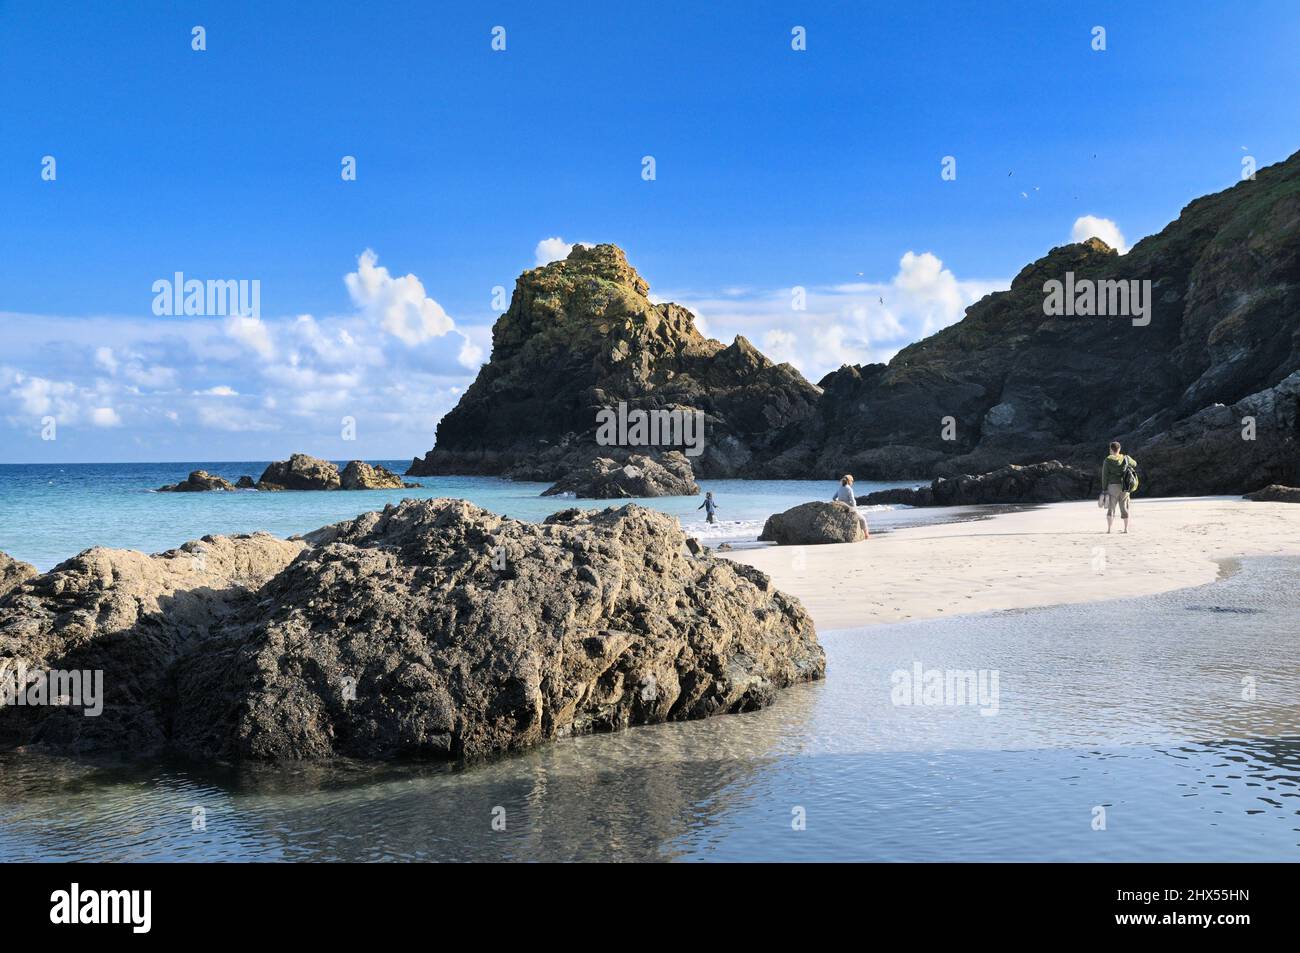 Kynance Cove sur la Péninsule du Lézard avec sa roche serpentine, piles de sables blancs et des eaux bleu turquoise, Cornwall, England, UK Banque D'Images